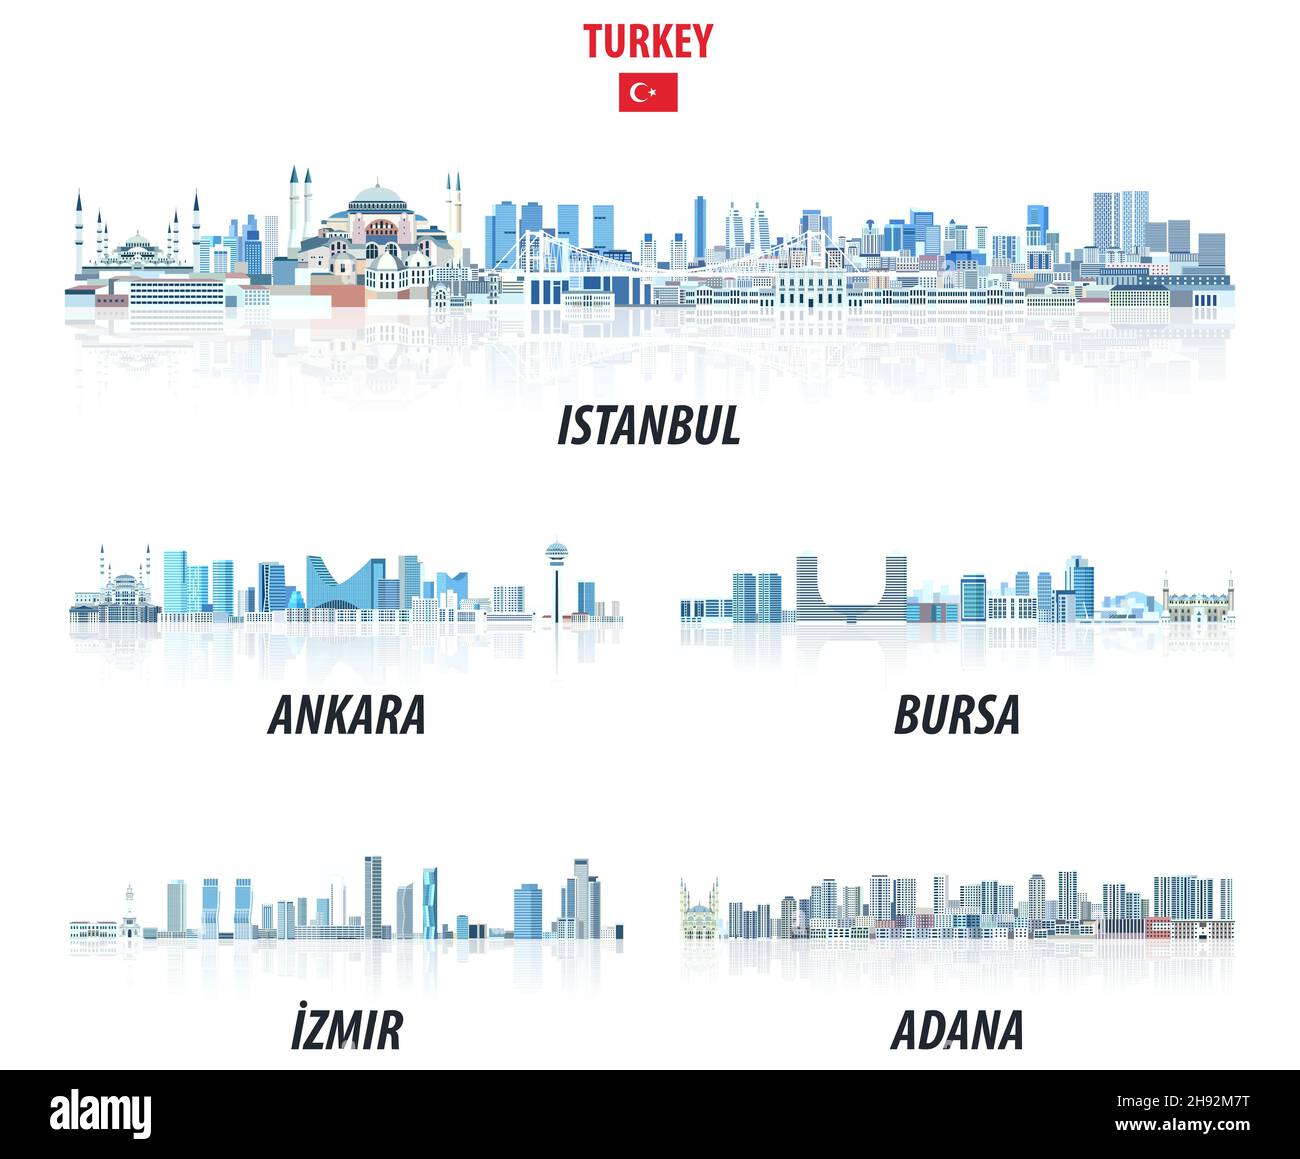 Türkische größte Städte Skylines in Blautönen Farbpalette. Rystal Ästhetik Stil Stock Vektor